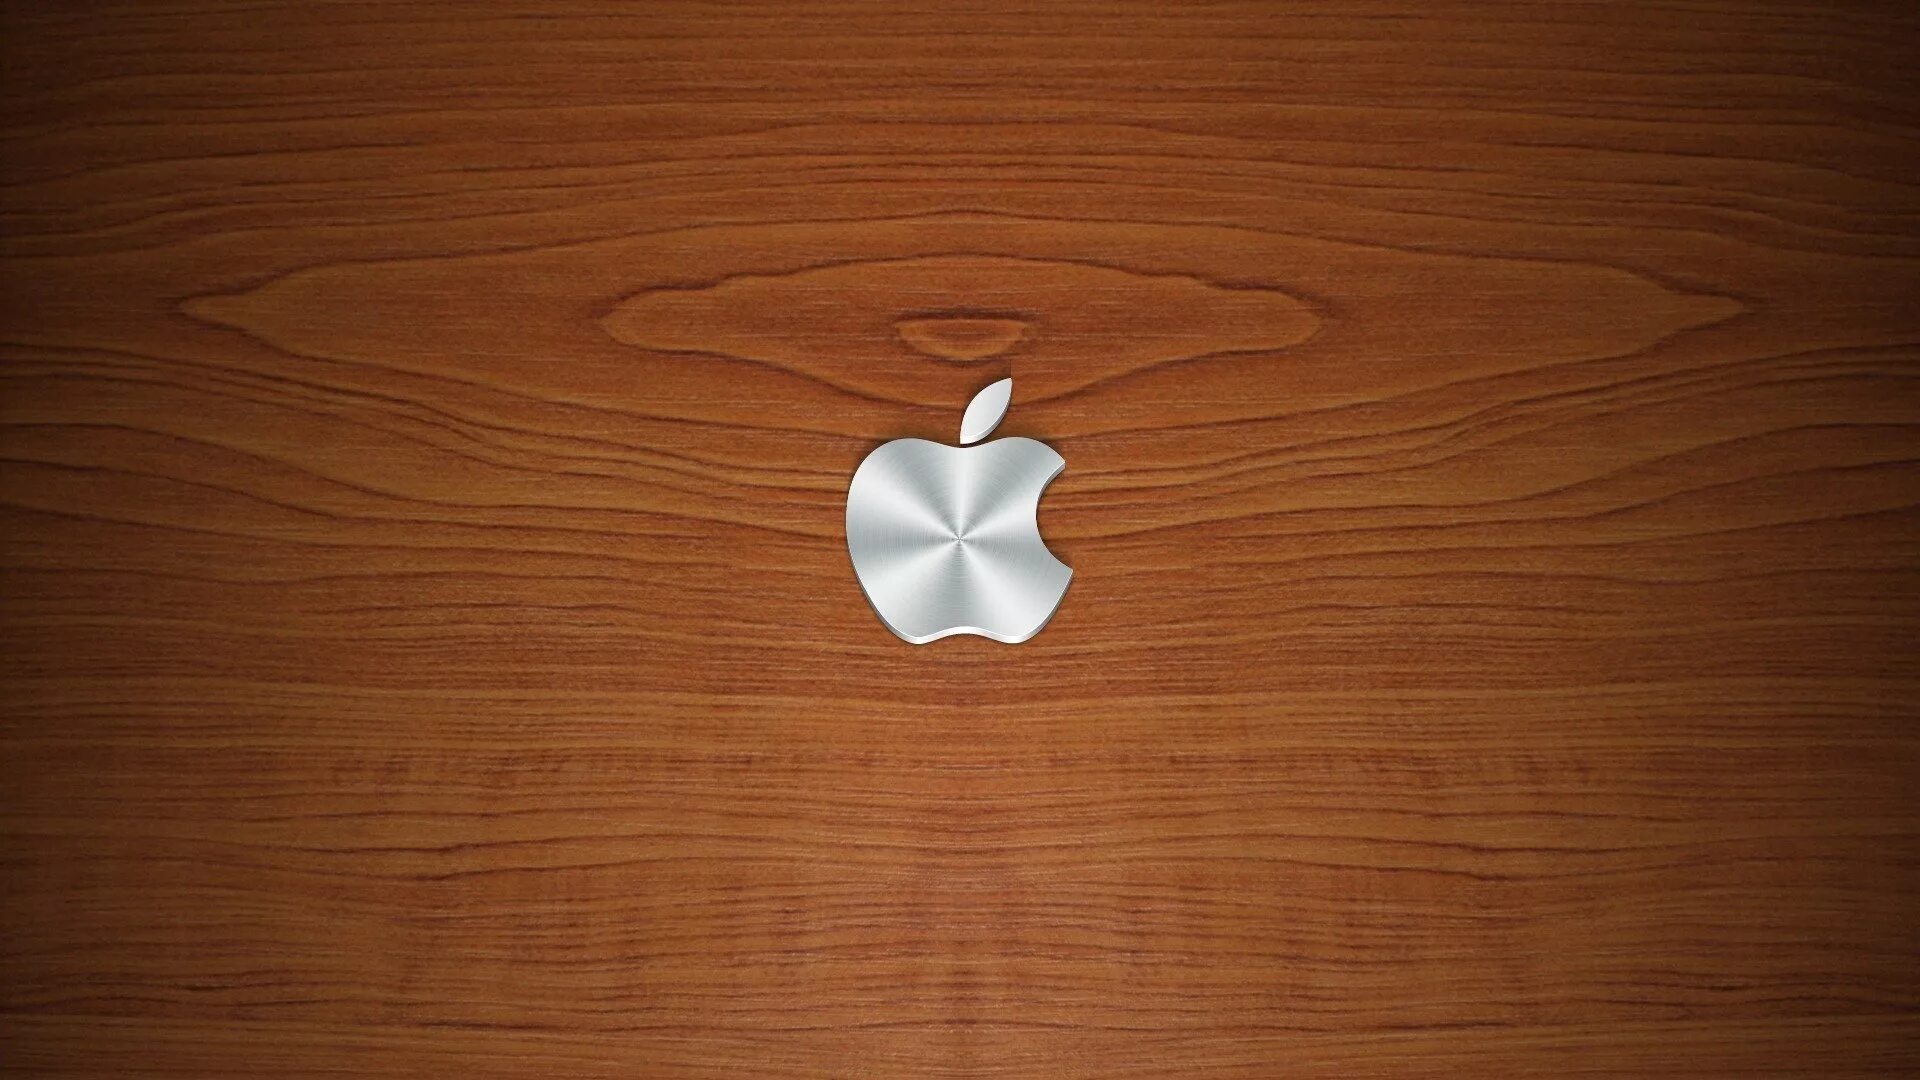 Обои эппл. Обои Apple. Заставки для Айпада. Картинки Apple на рабочий стол. Оригинальный рабочий стол.